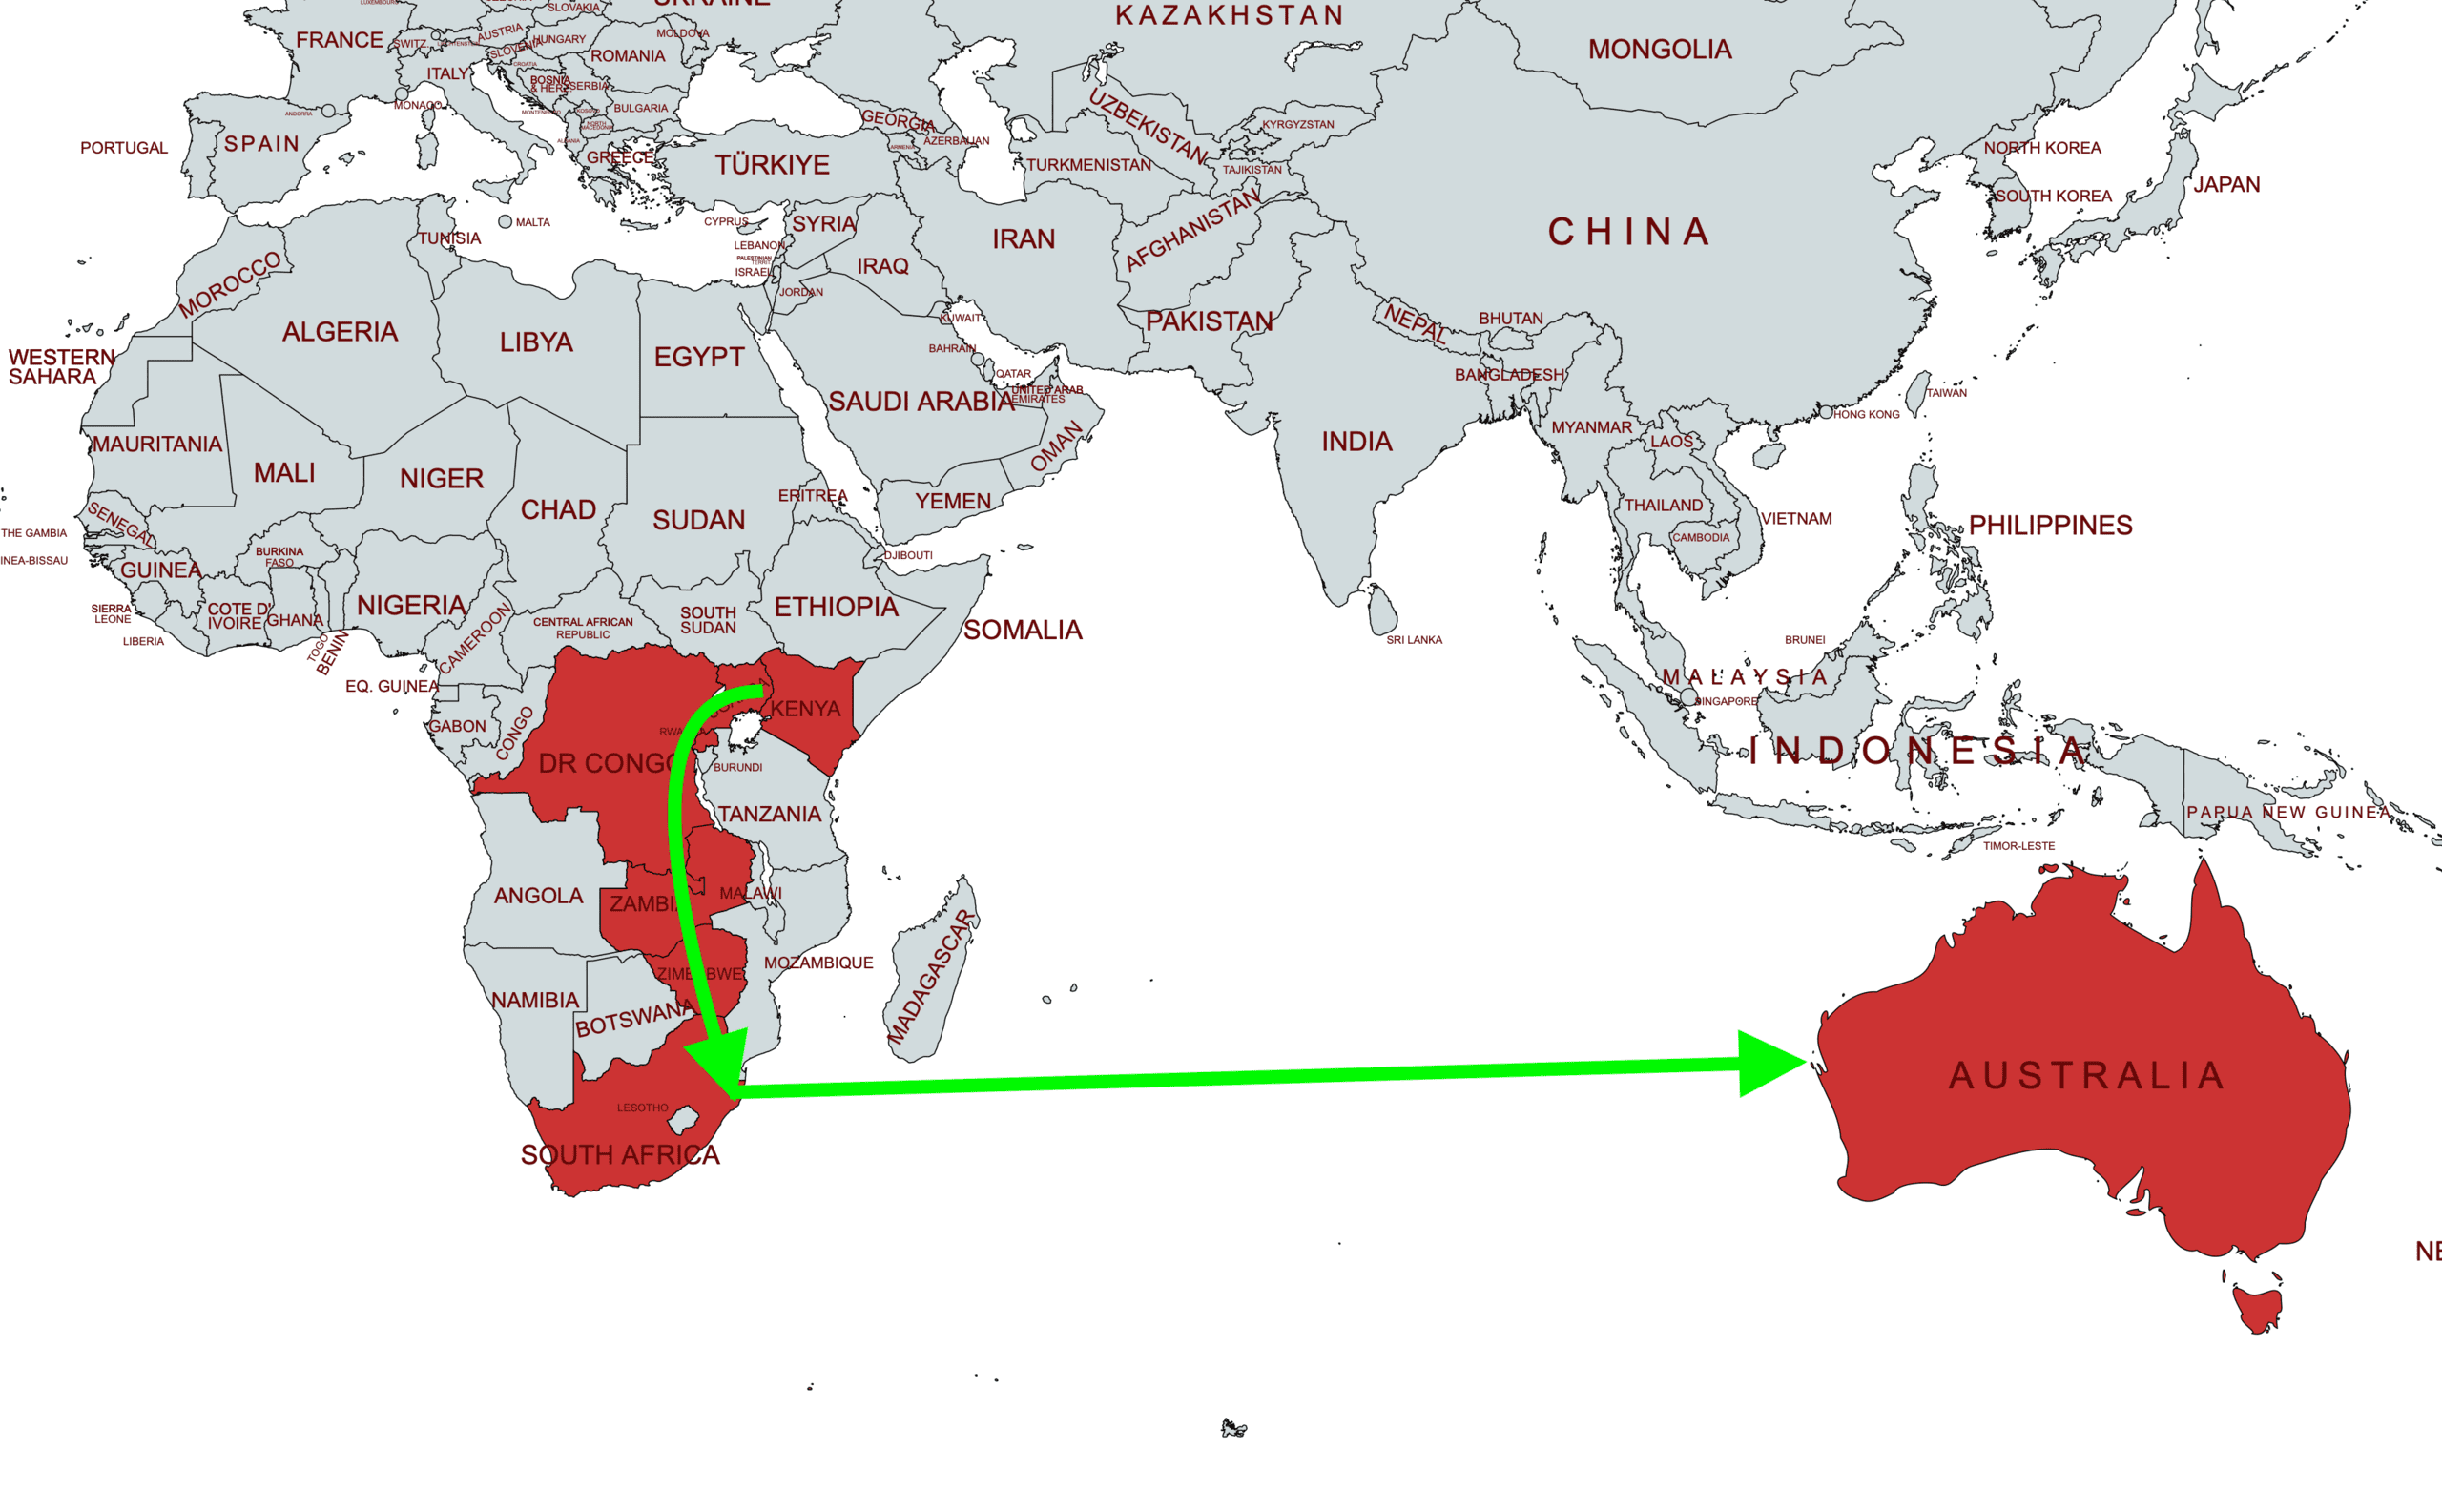 A Google egy kábellel kötné össze Afrikát Ausztráliával, kiemelt kép